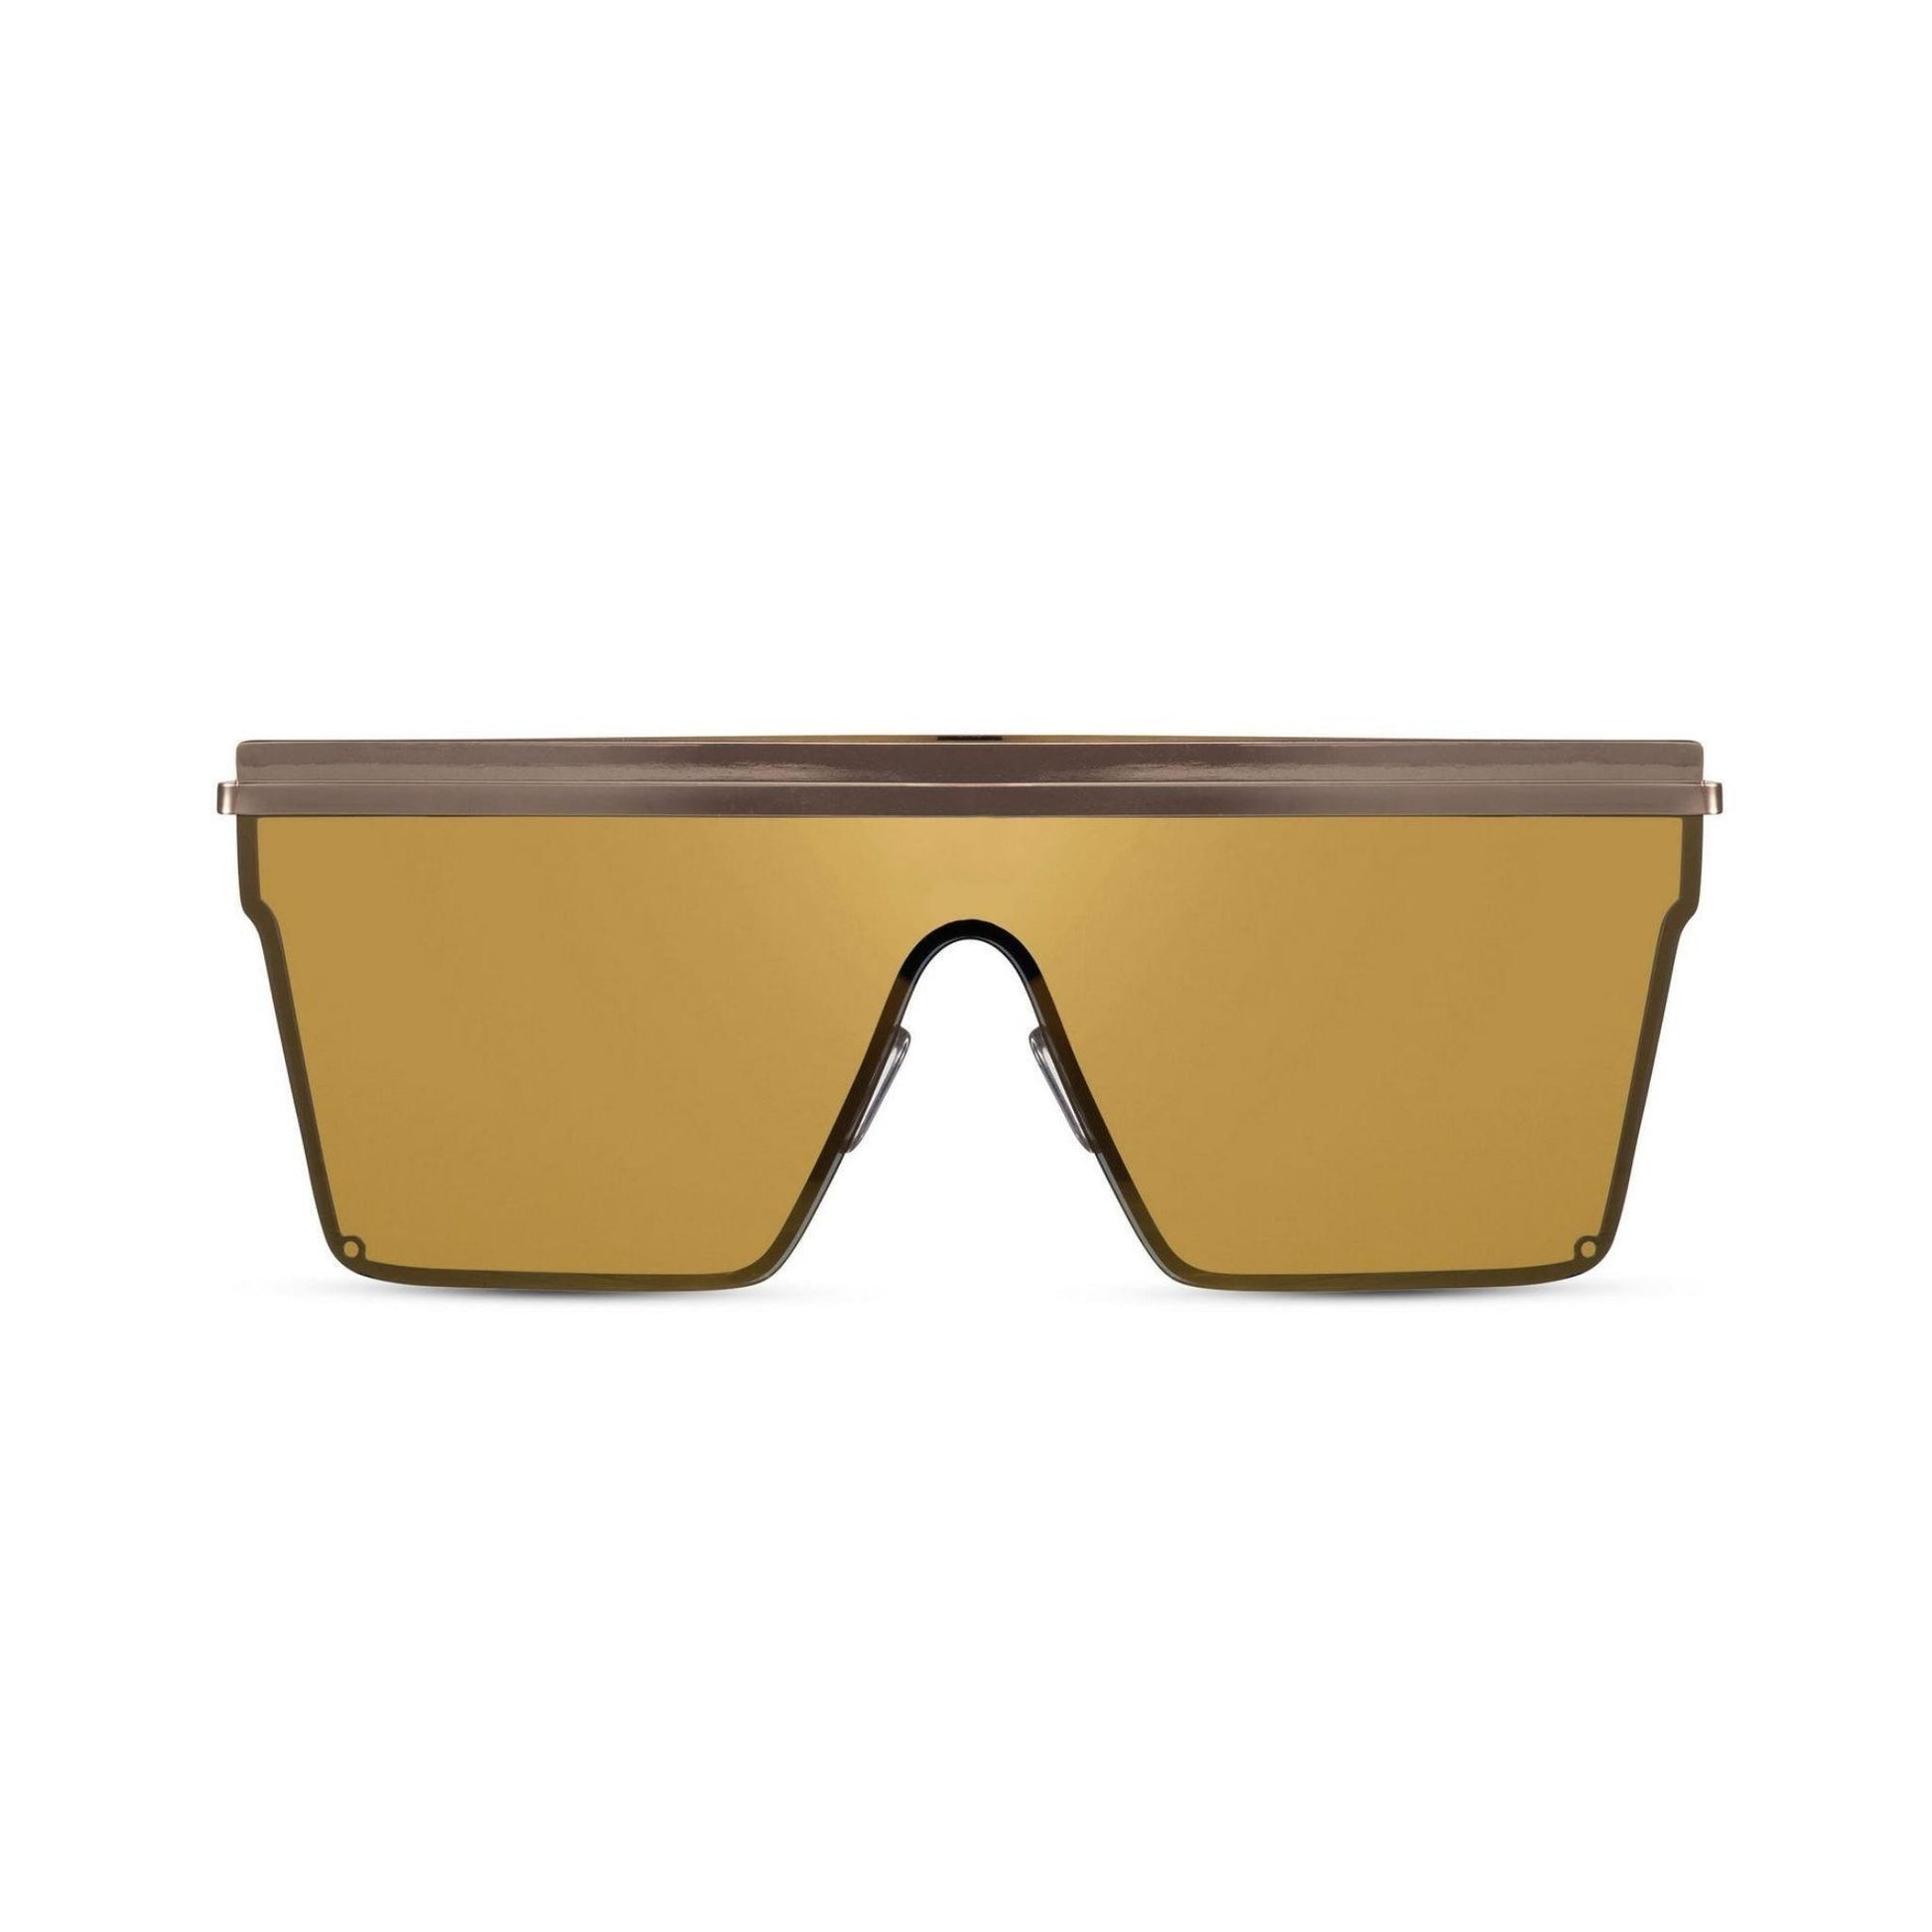 Γυαλιά ηλίου Jackie (μάσκα) της Exposure Sunglasses με προστασία UV400 με χρυσό σκελετό και χρυσό φακό.